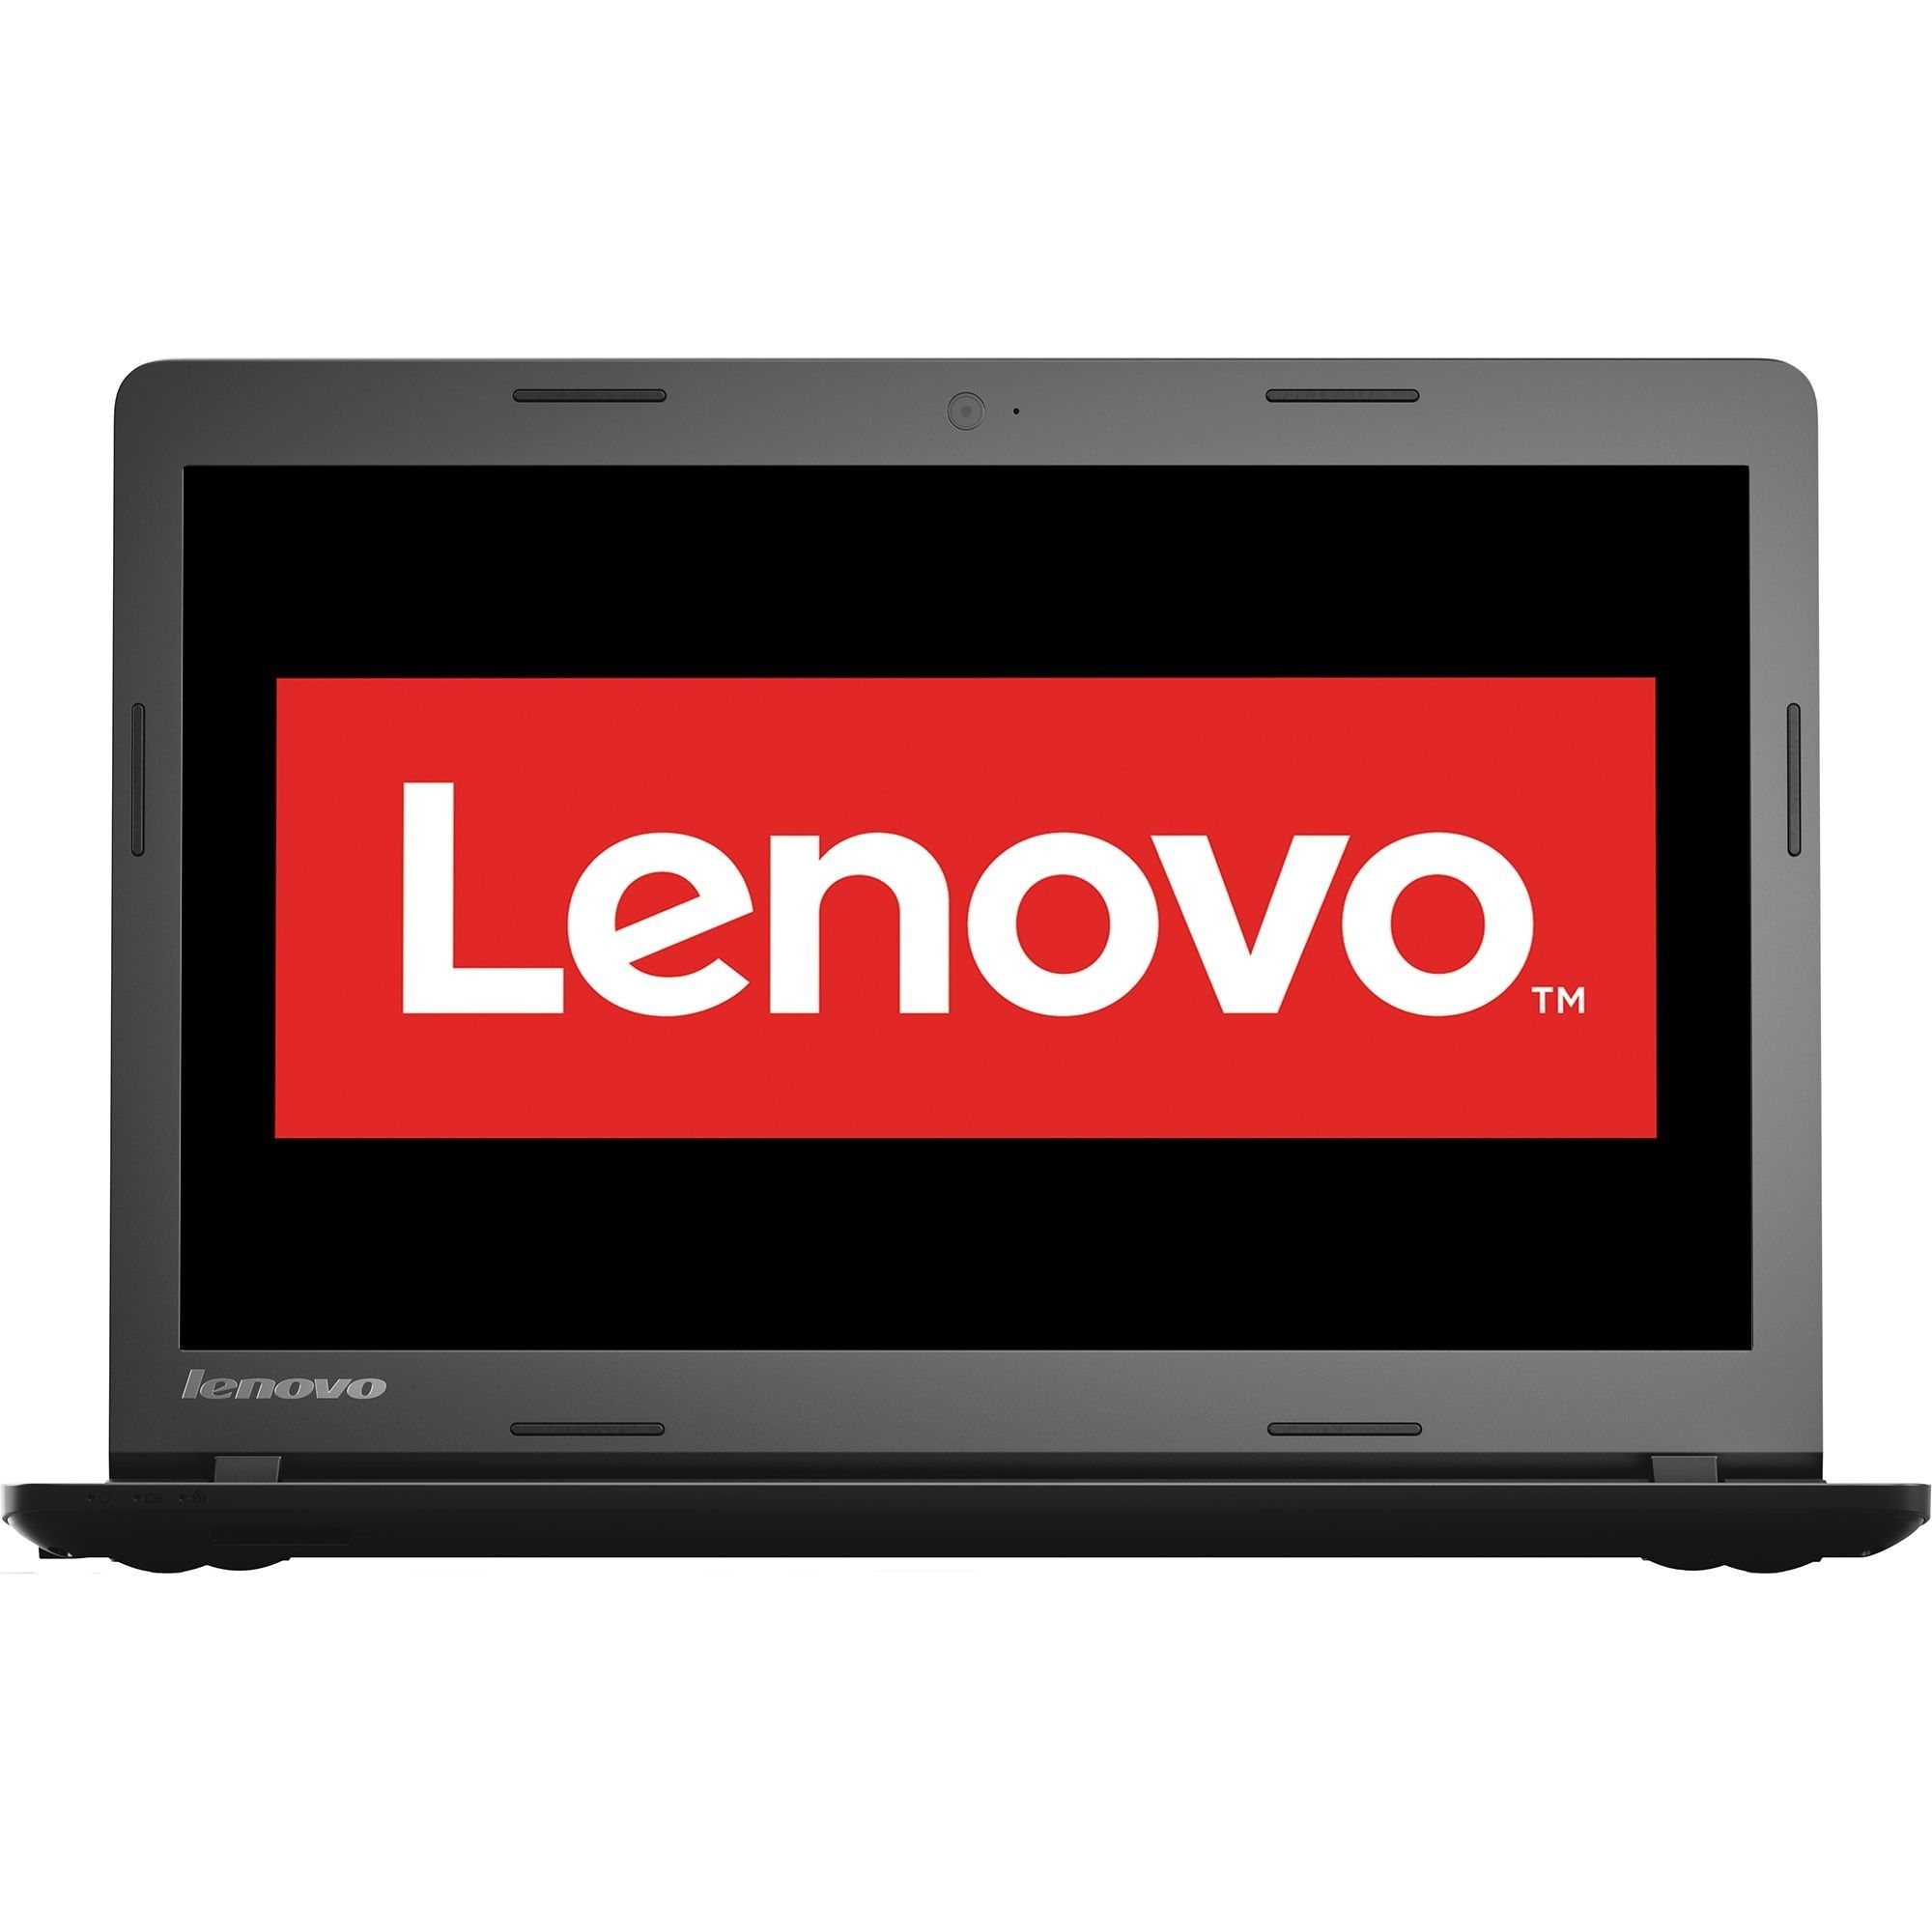 Laptop Lenovo IdeaPad 110-15IBR, Intel Celeron N3060, 4GB DDR3, HDD 500GB, Intel HD Graphics, Free DOS